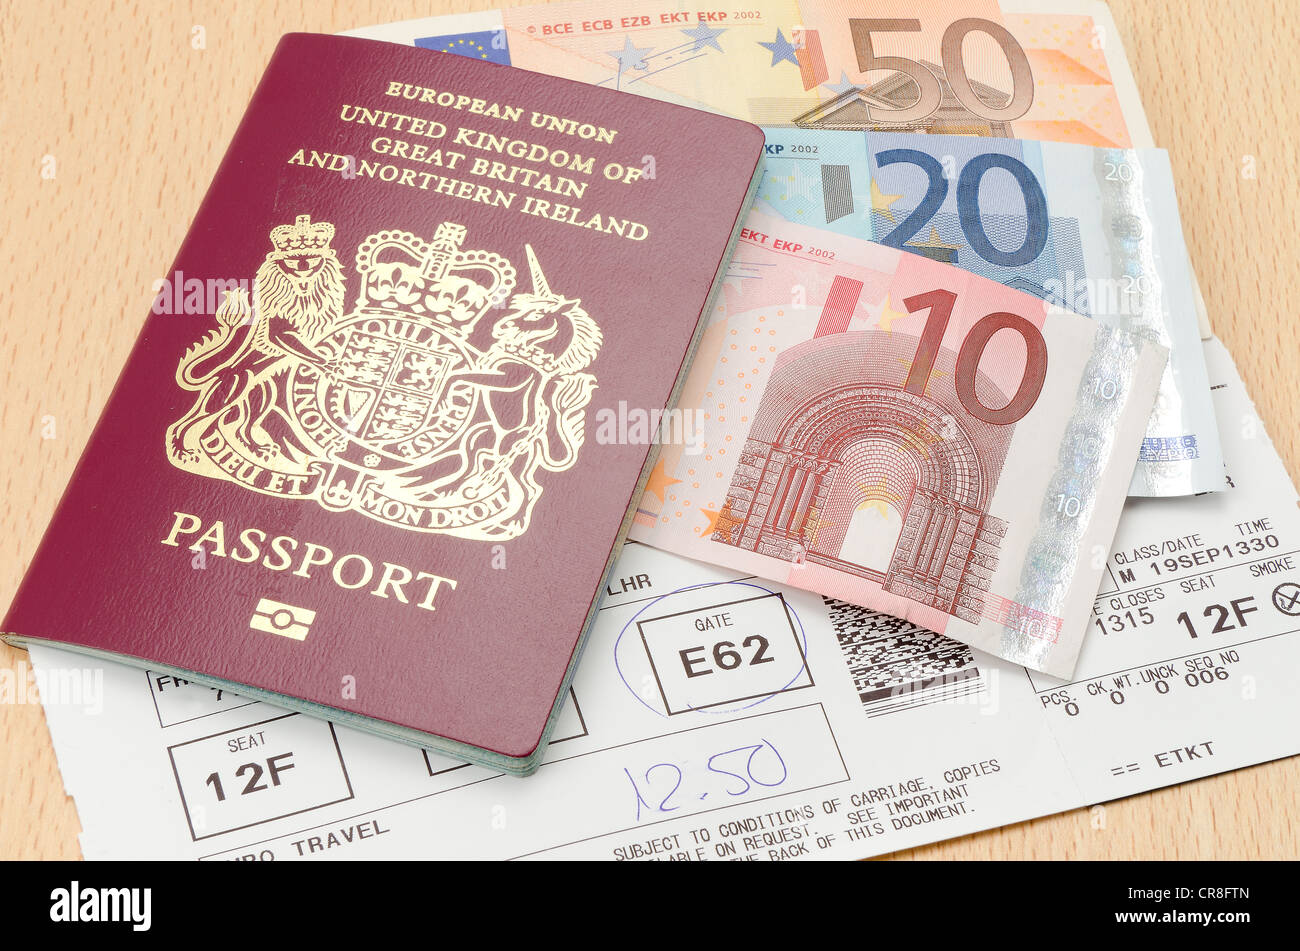 Passeport britannique avec Euro billets de monnaie et une carte d'embarquement des compagnies aériennes - studio shot Banque D'Images